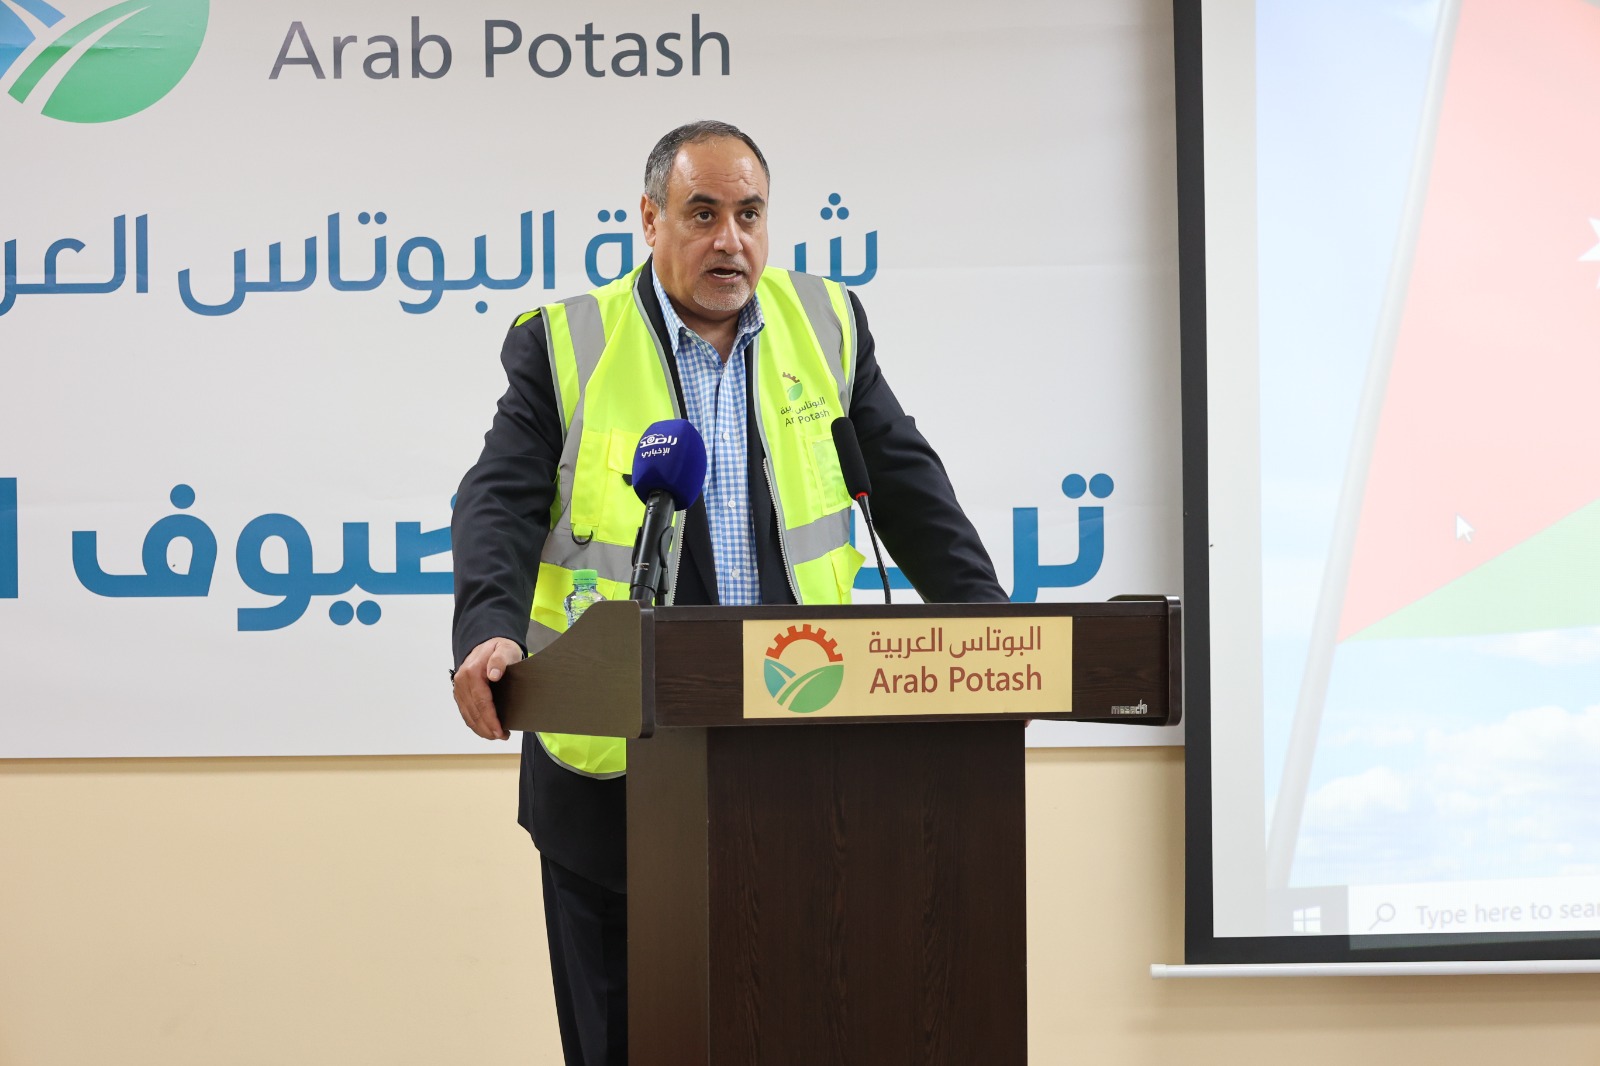 البوتاس العربية  و الفوسفات الأردنية  تحتفيان بعمالهما وتؤكدان على دورهم الرئيسي  في تعزيز حضور ومكانة الشركتين محلياً وعالمياً